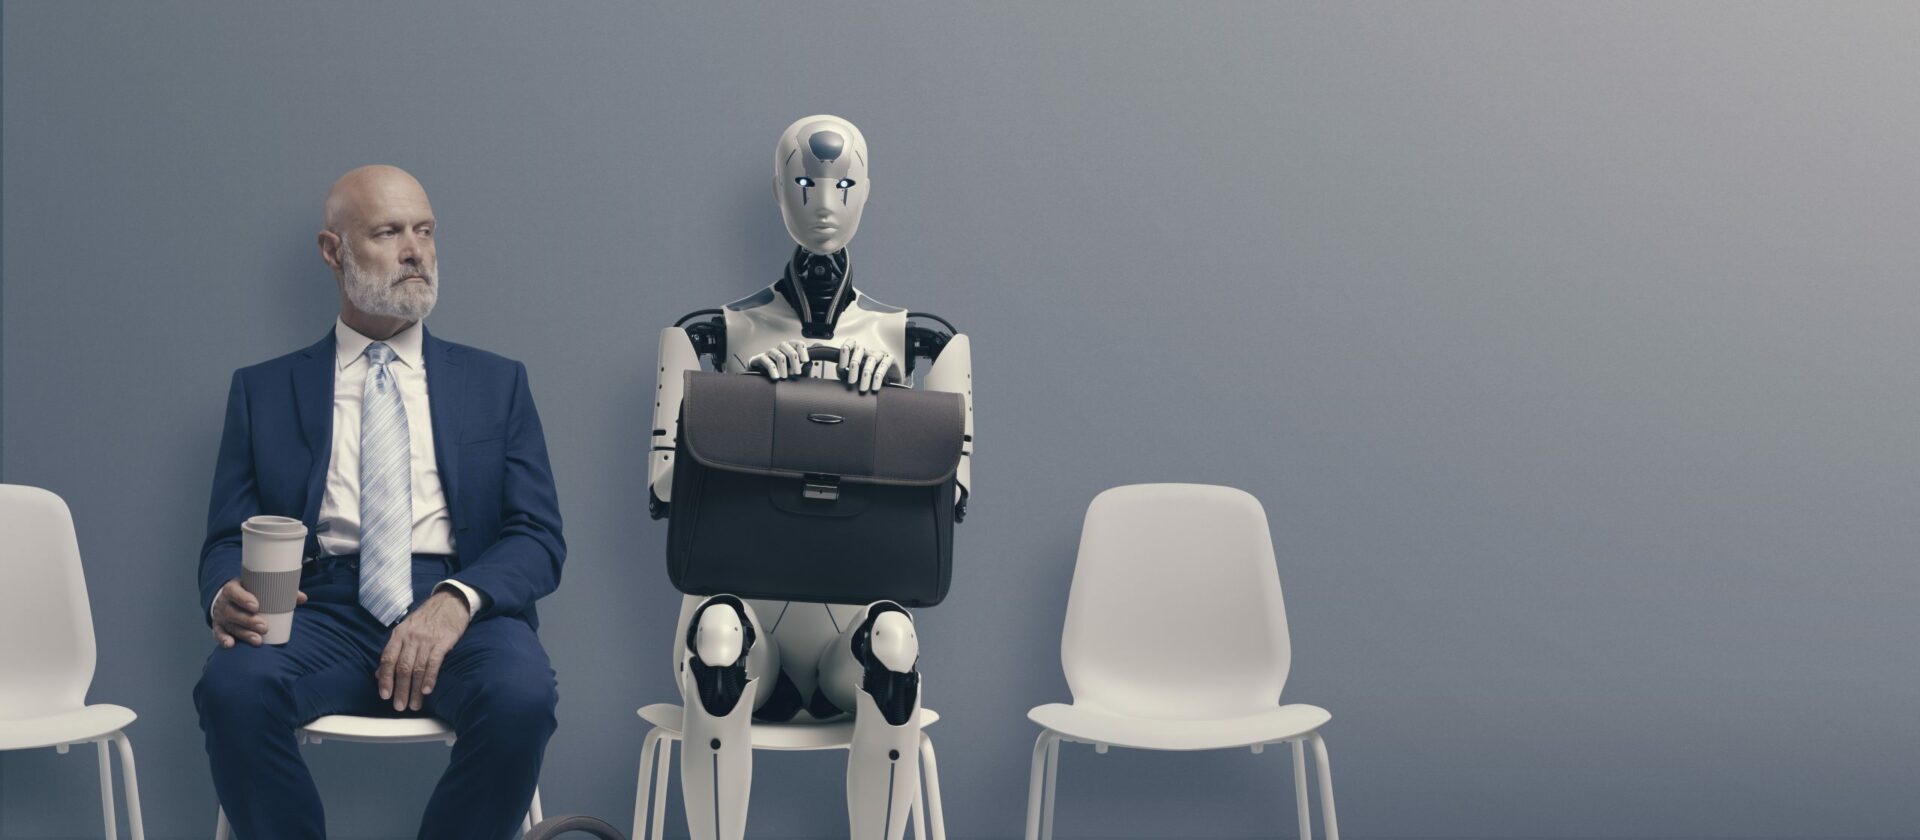 בדרך למהפך: המקצועות שישתנו בעקבות כניסת הבינה המלאכותית לשוק העבודה